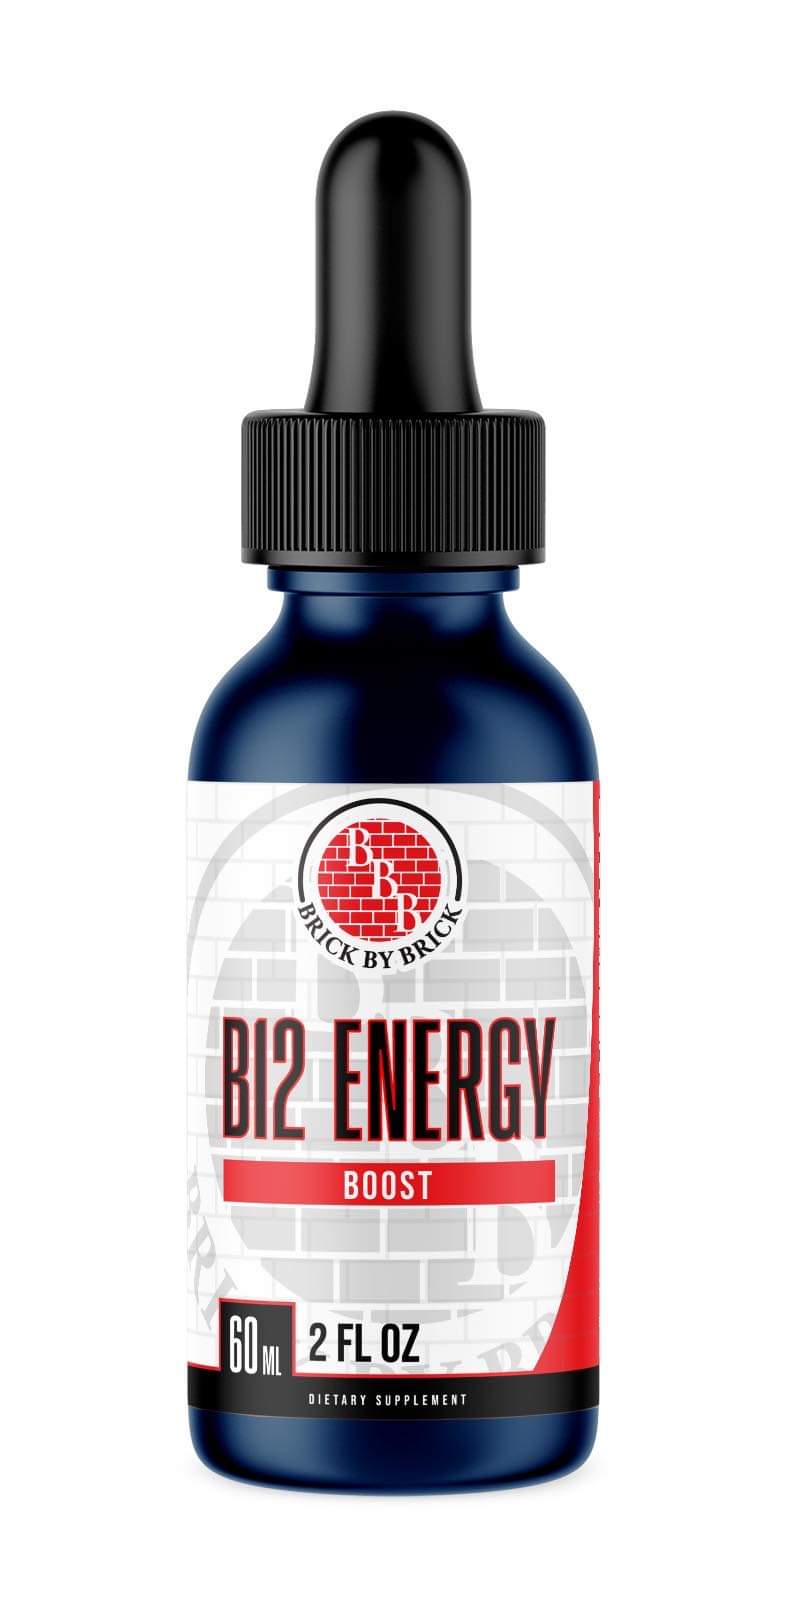 B12 Energy